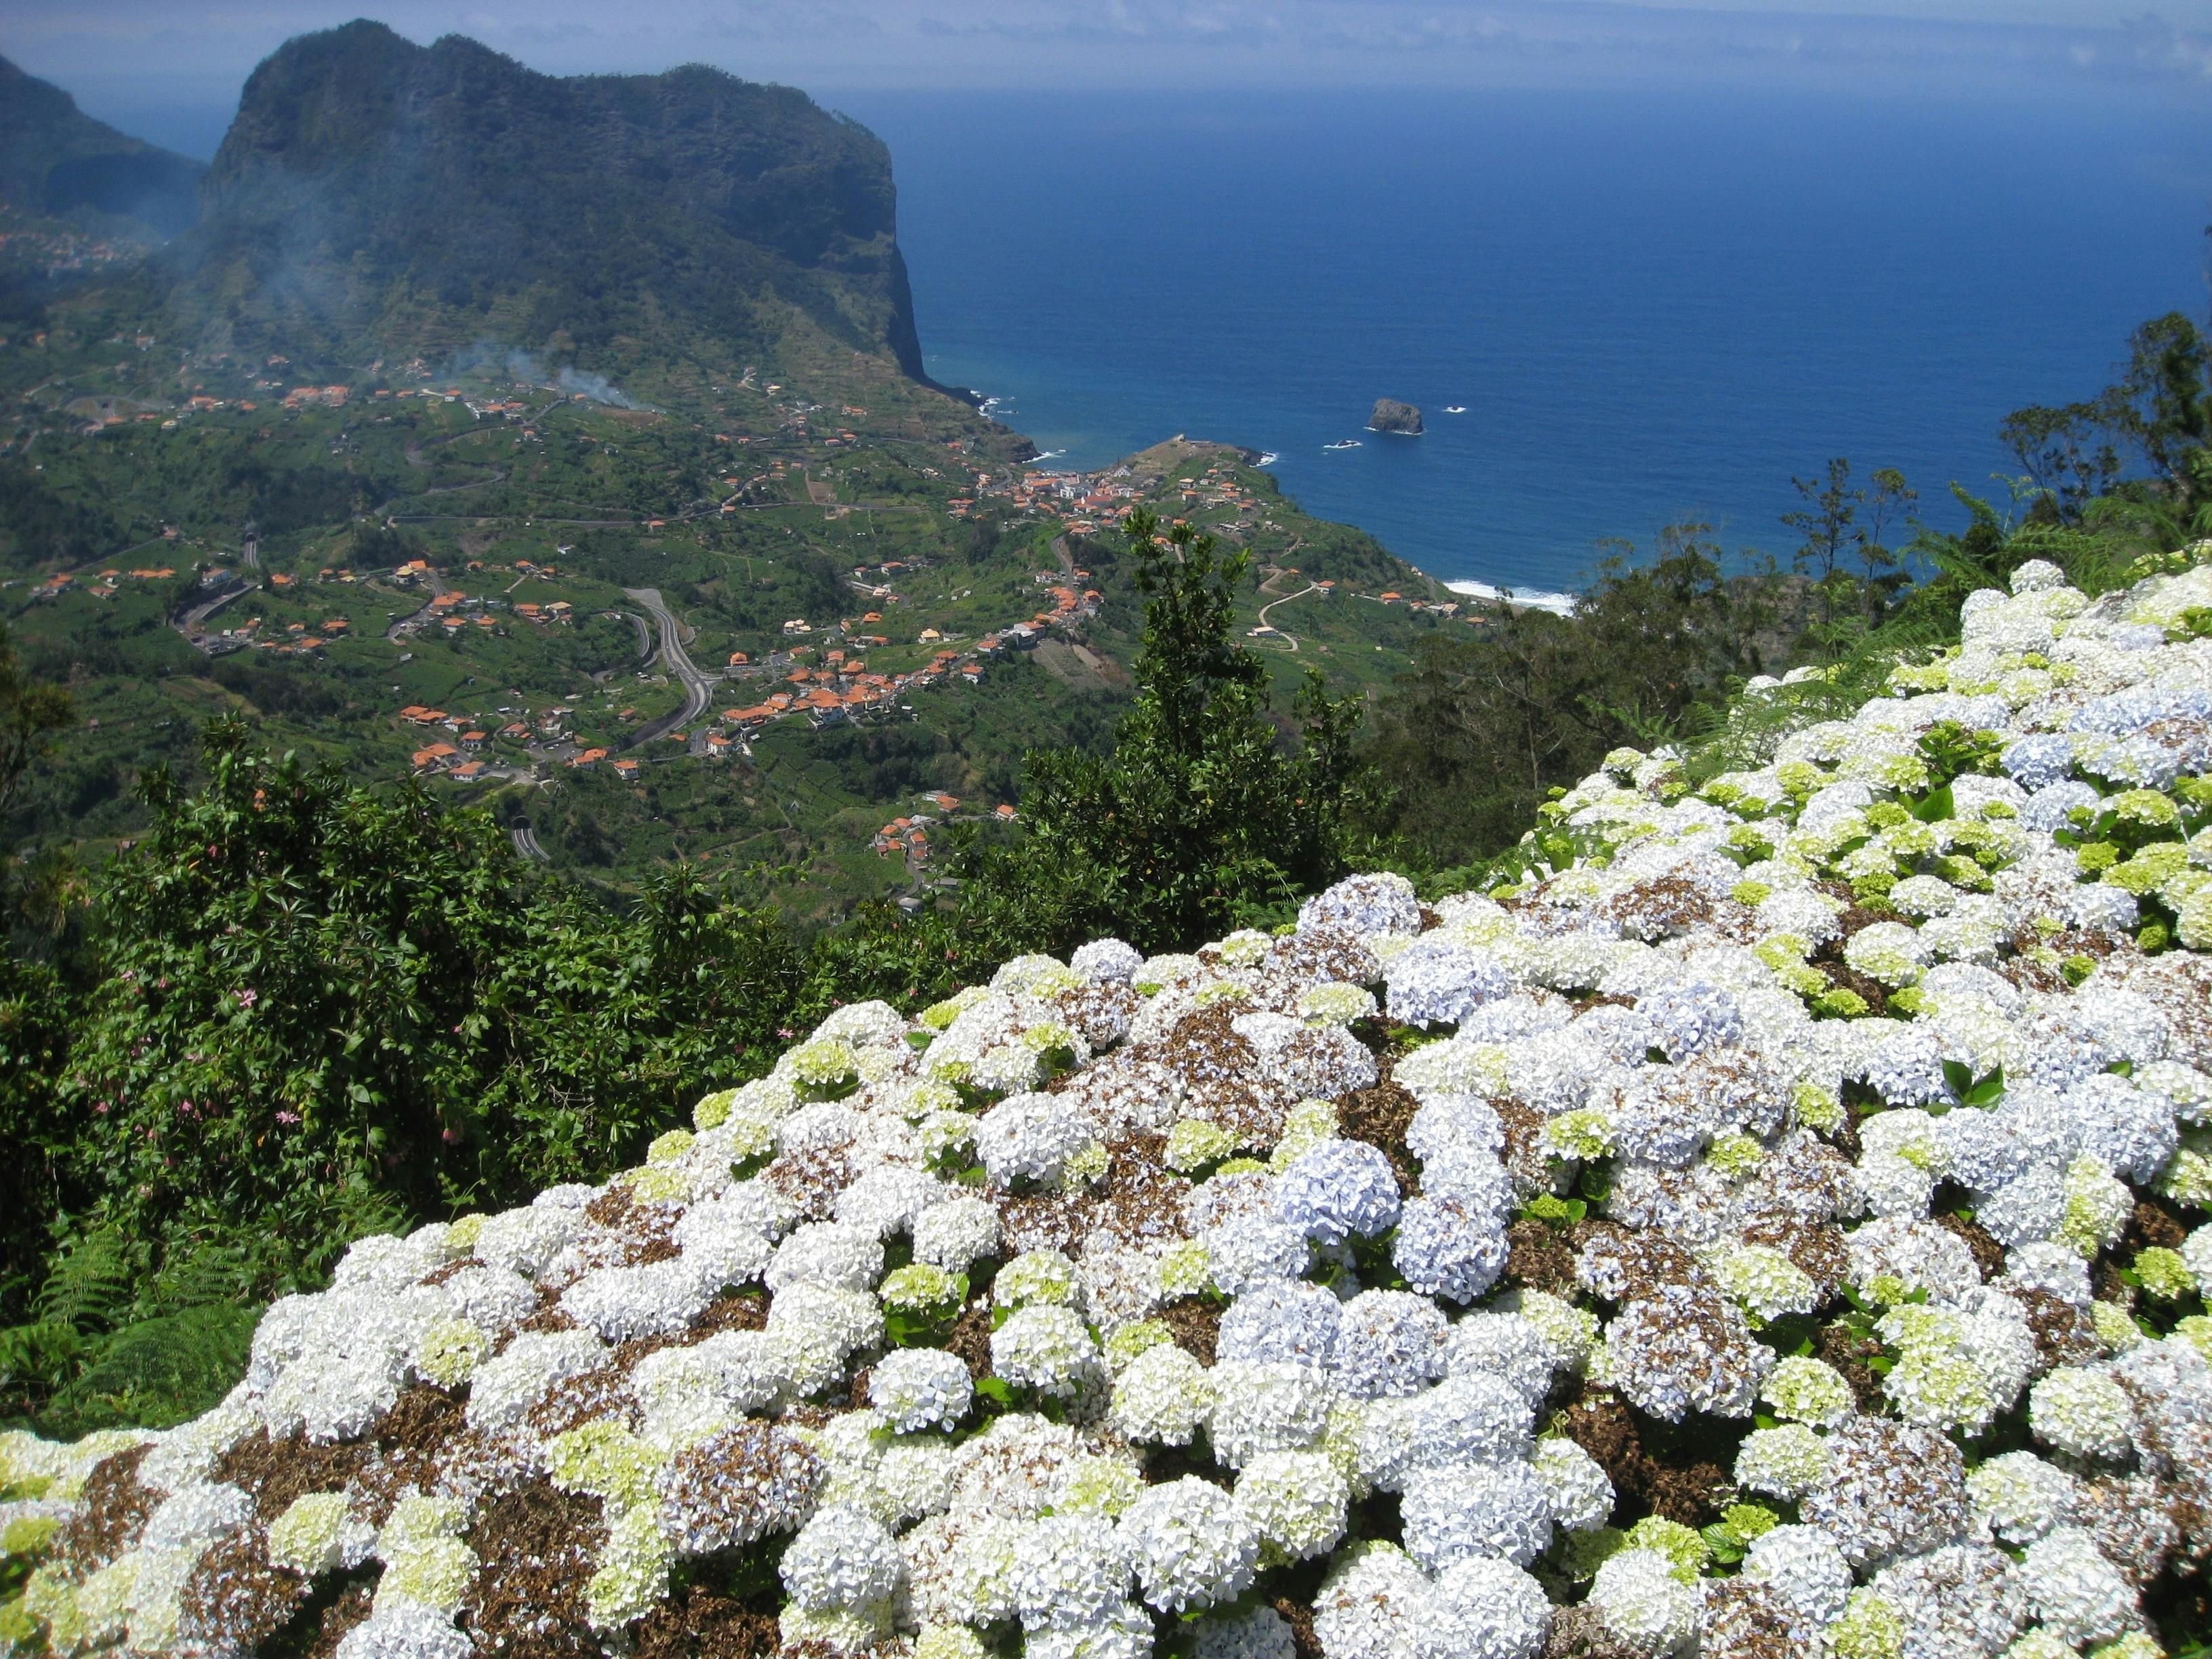 Referta to Castelejo geführte Wanderung auf Madeira